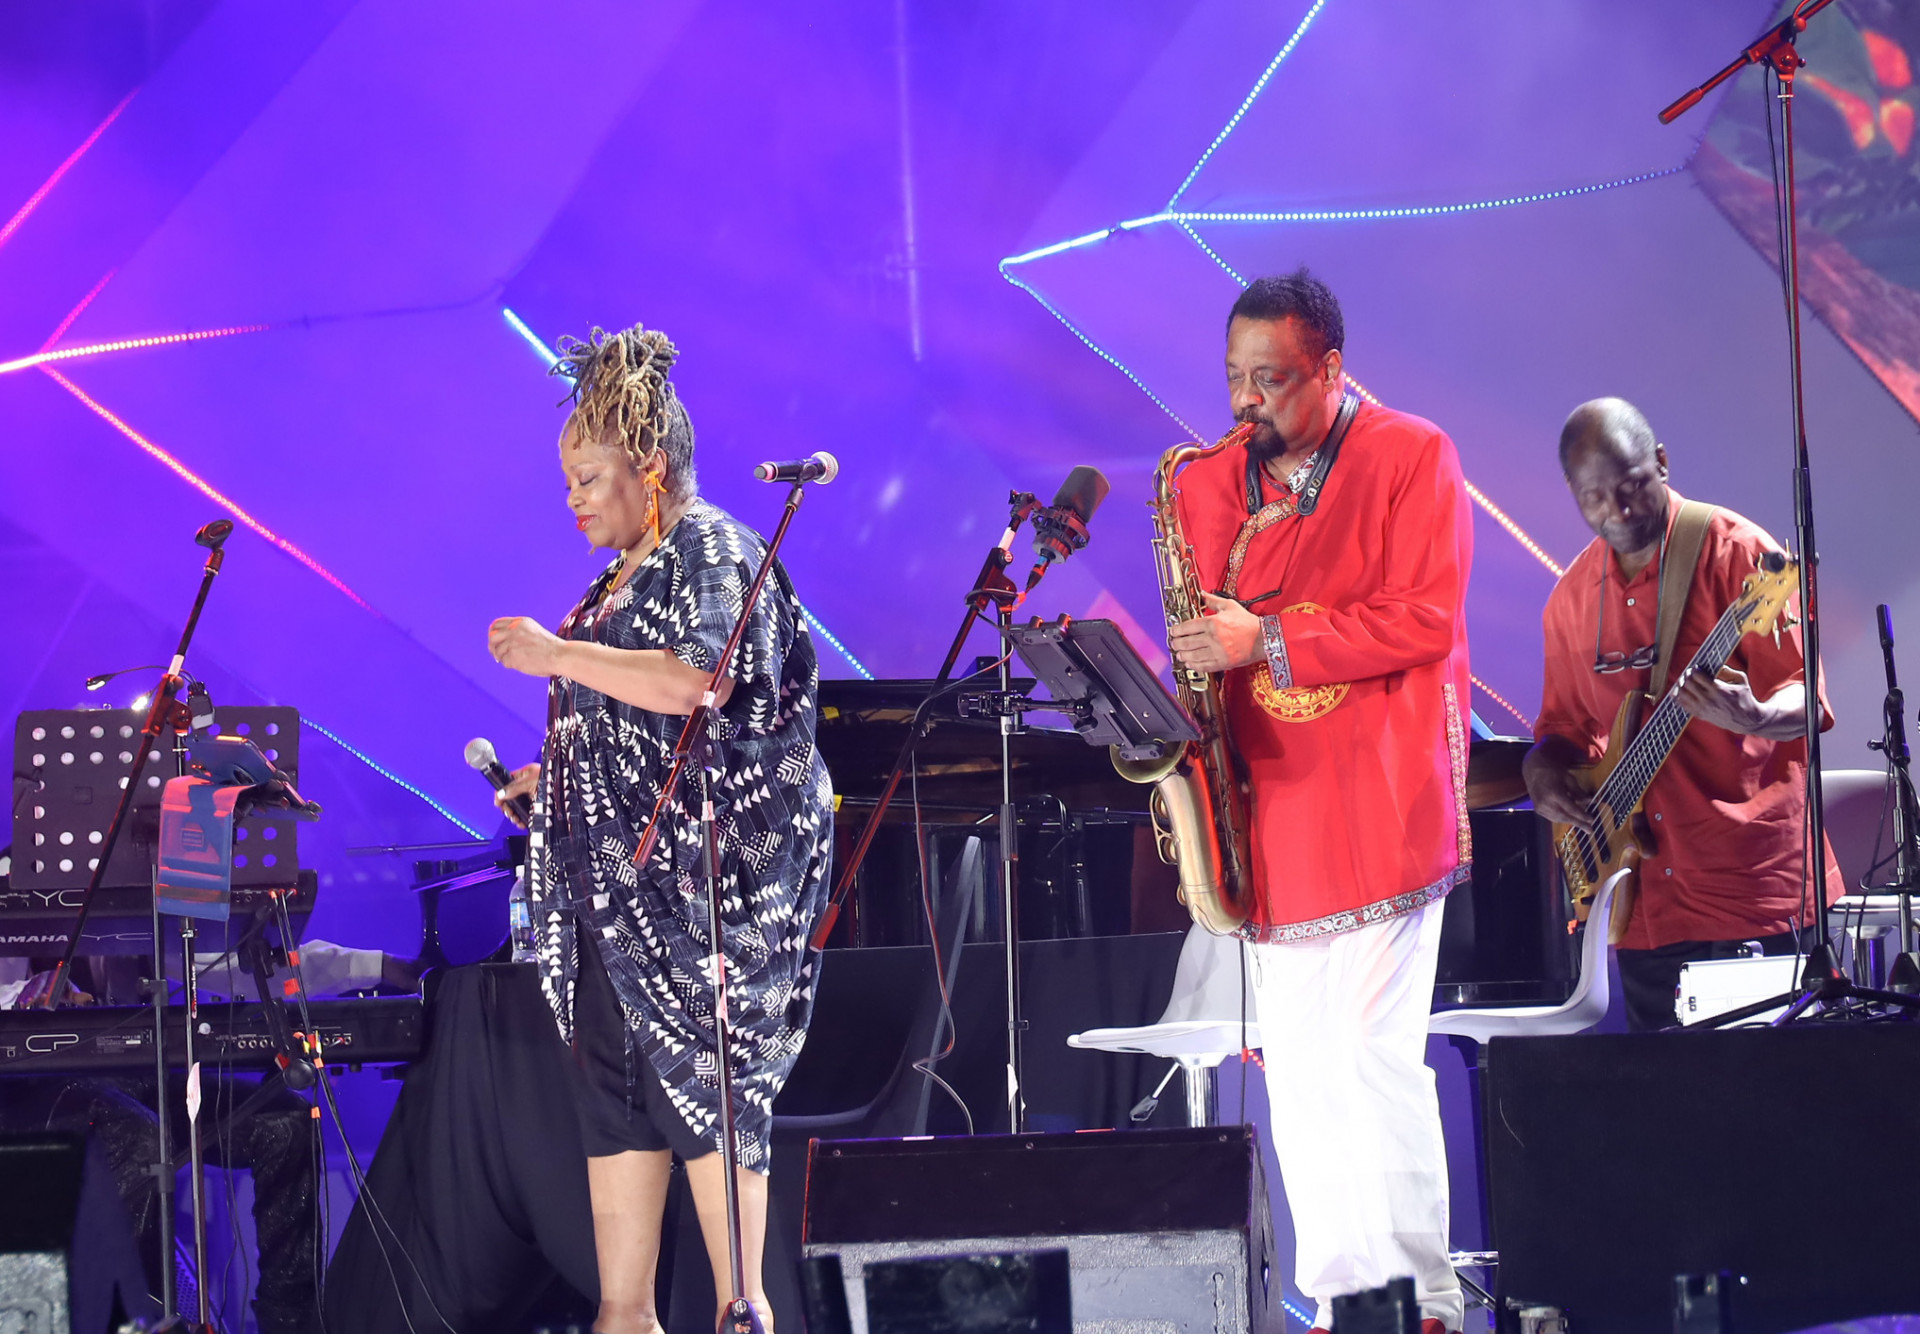 Huyền thoại nhạc Jazz thế giới Chico Freeman (bên phải), cùng các thành viên trong ban nhạc đến từ Mỹ đã có lần đầu biểu diễn trước khán giả TP. Nha Trang.